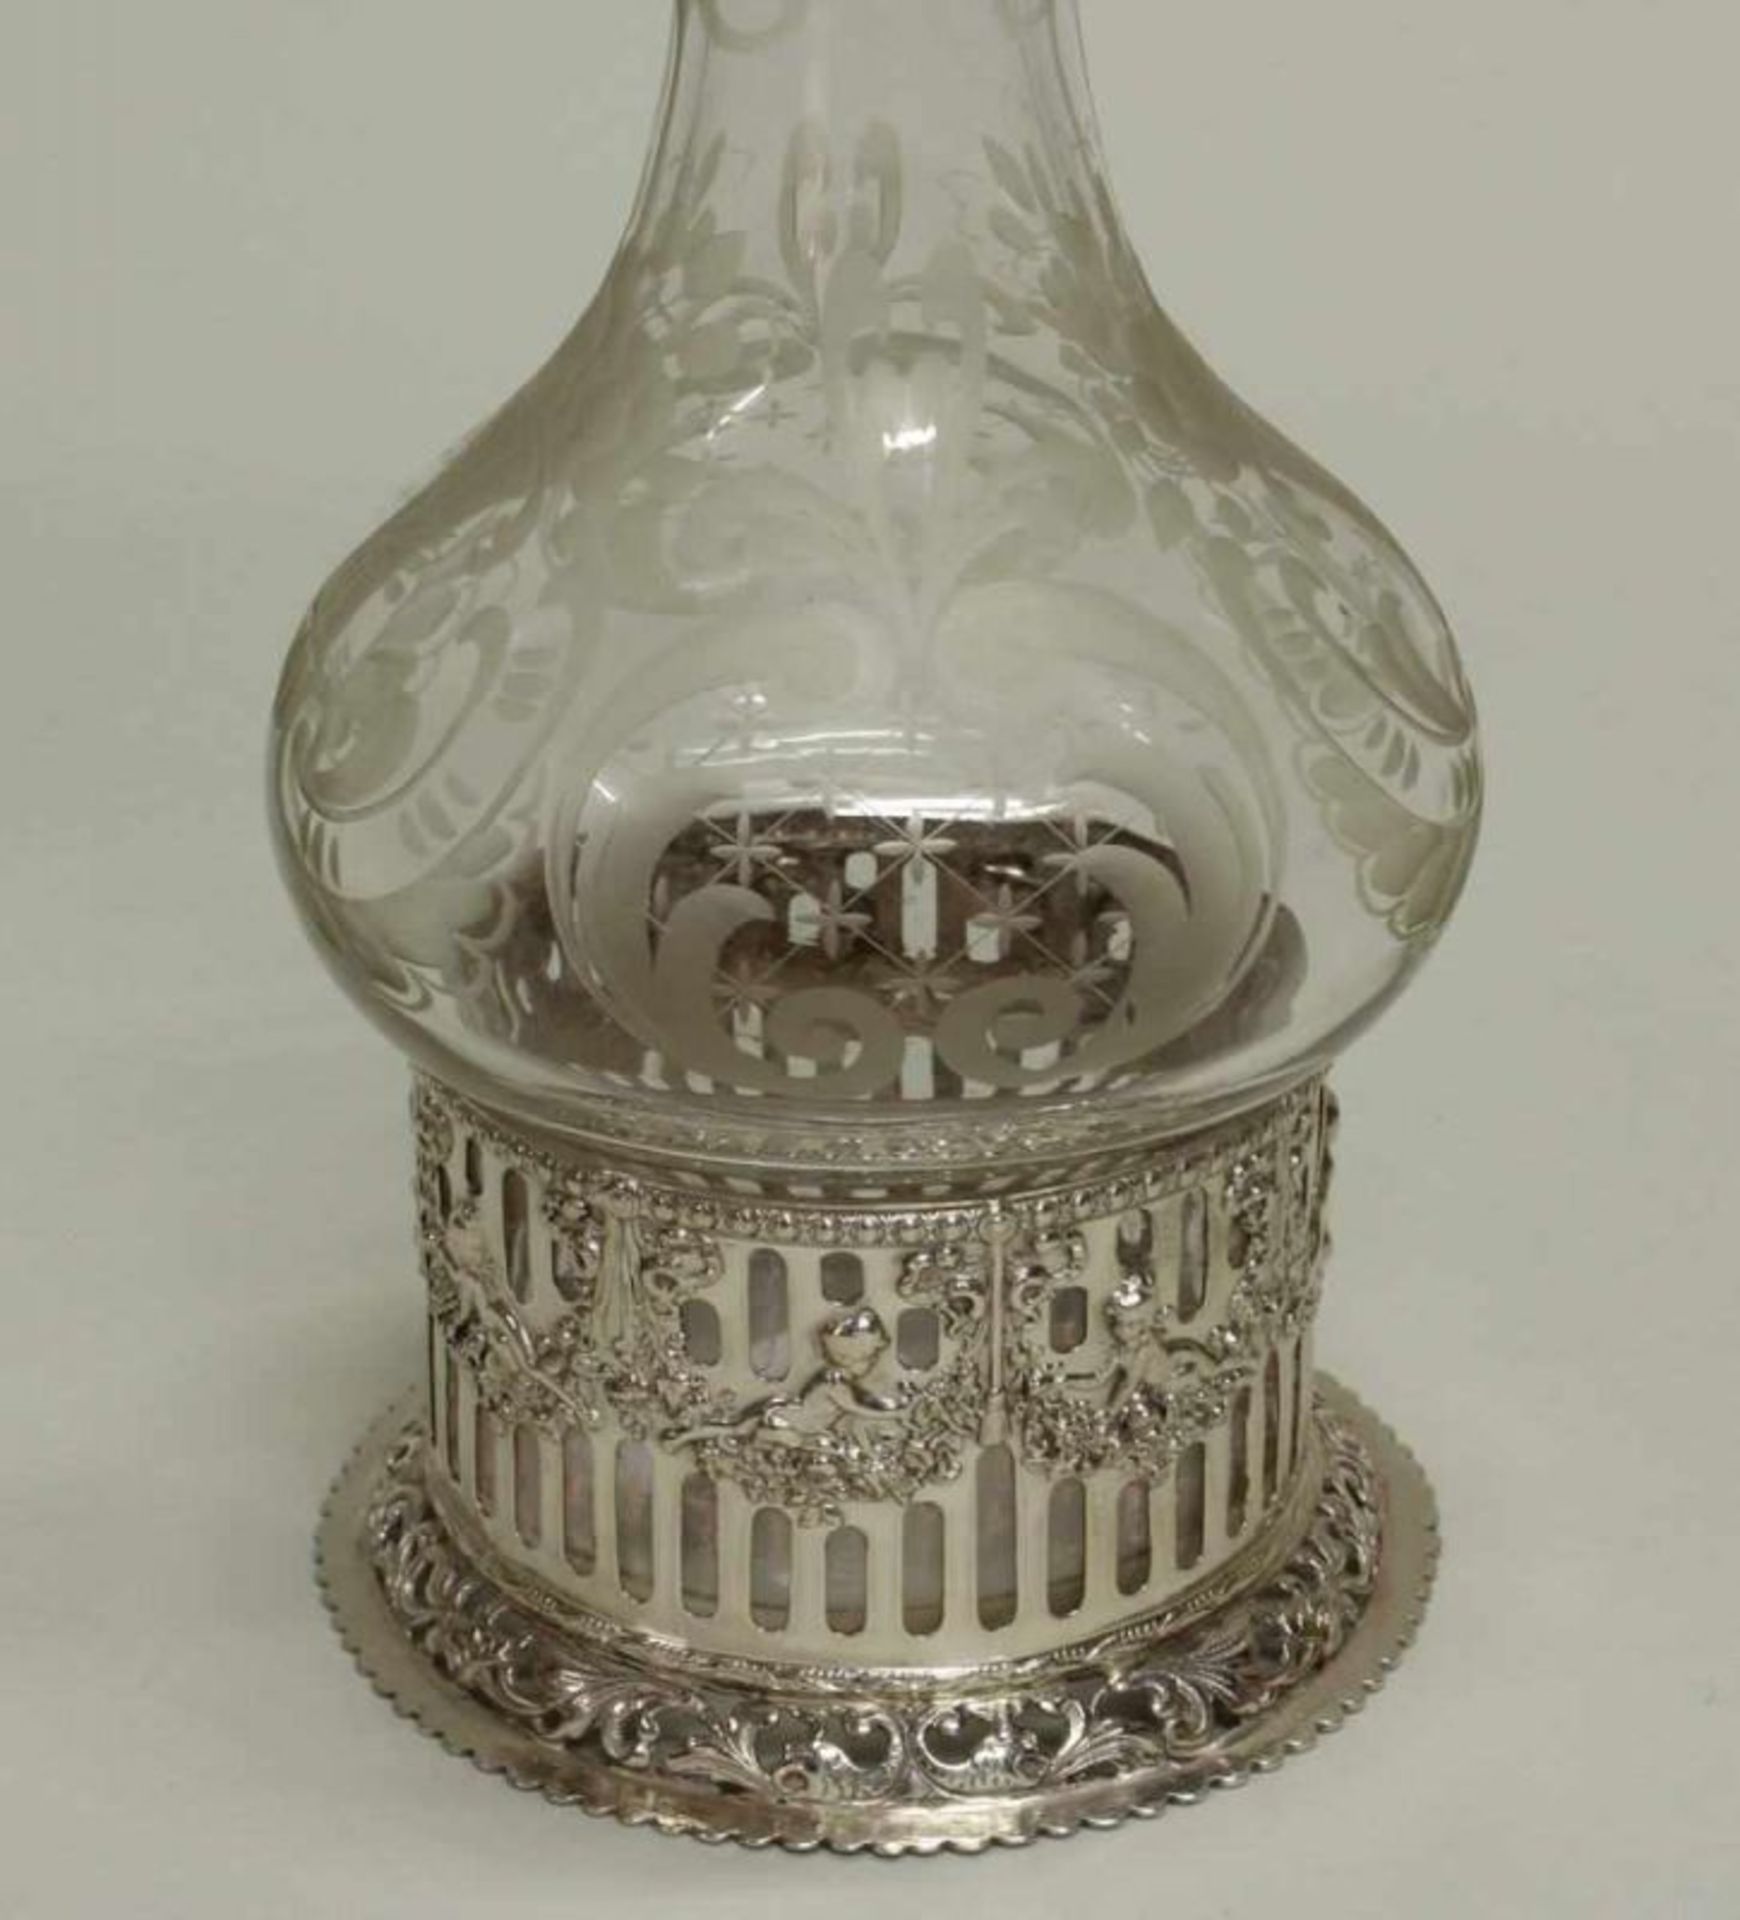 Likörflasche, Silber 800, Hanau, Neresheimer, Flasche aus geschliffenem Glas, Silbermontage, 29 cm - Image 3 of 3